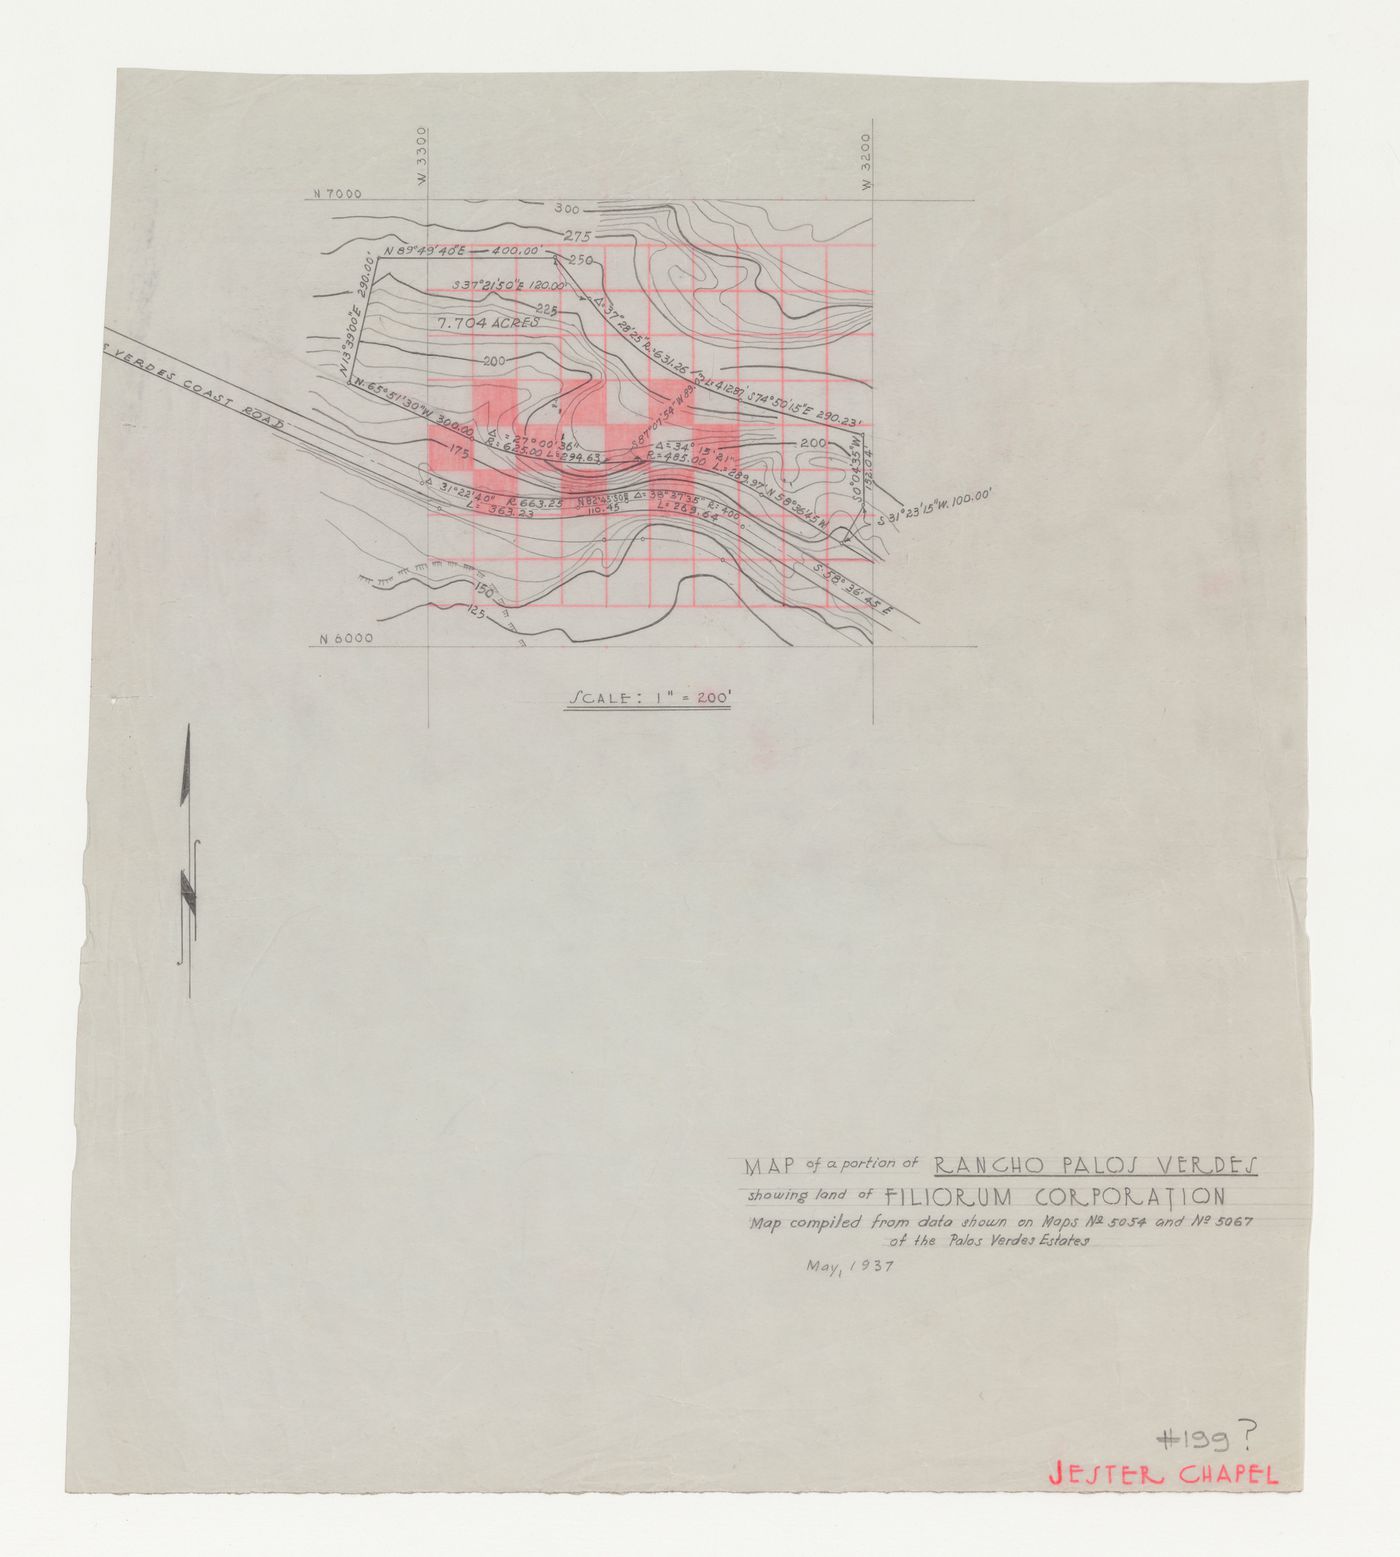 Wayfarers' Chapel, Palos Verdes, California: Contour map of Filiorum Corporation property, including chapel site